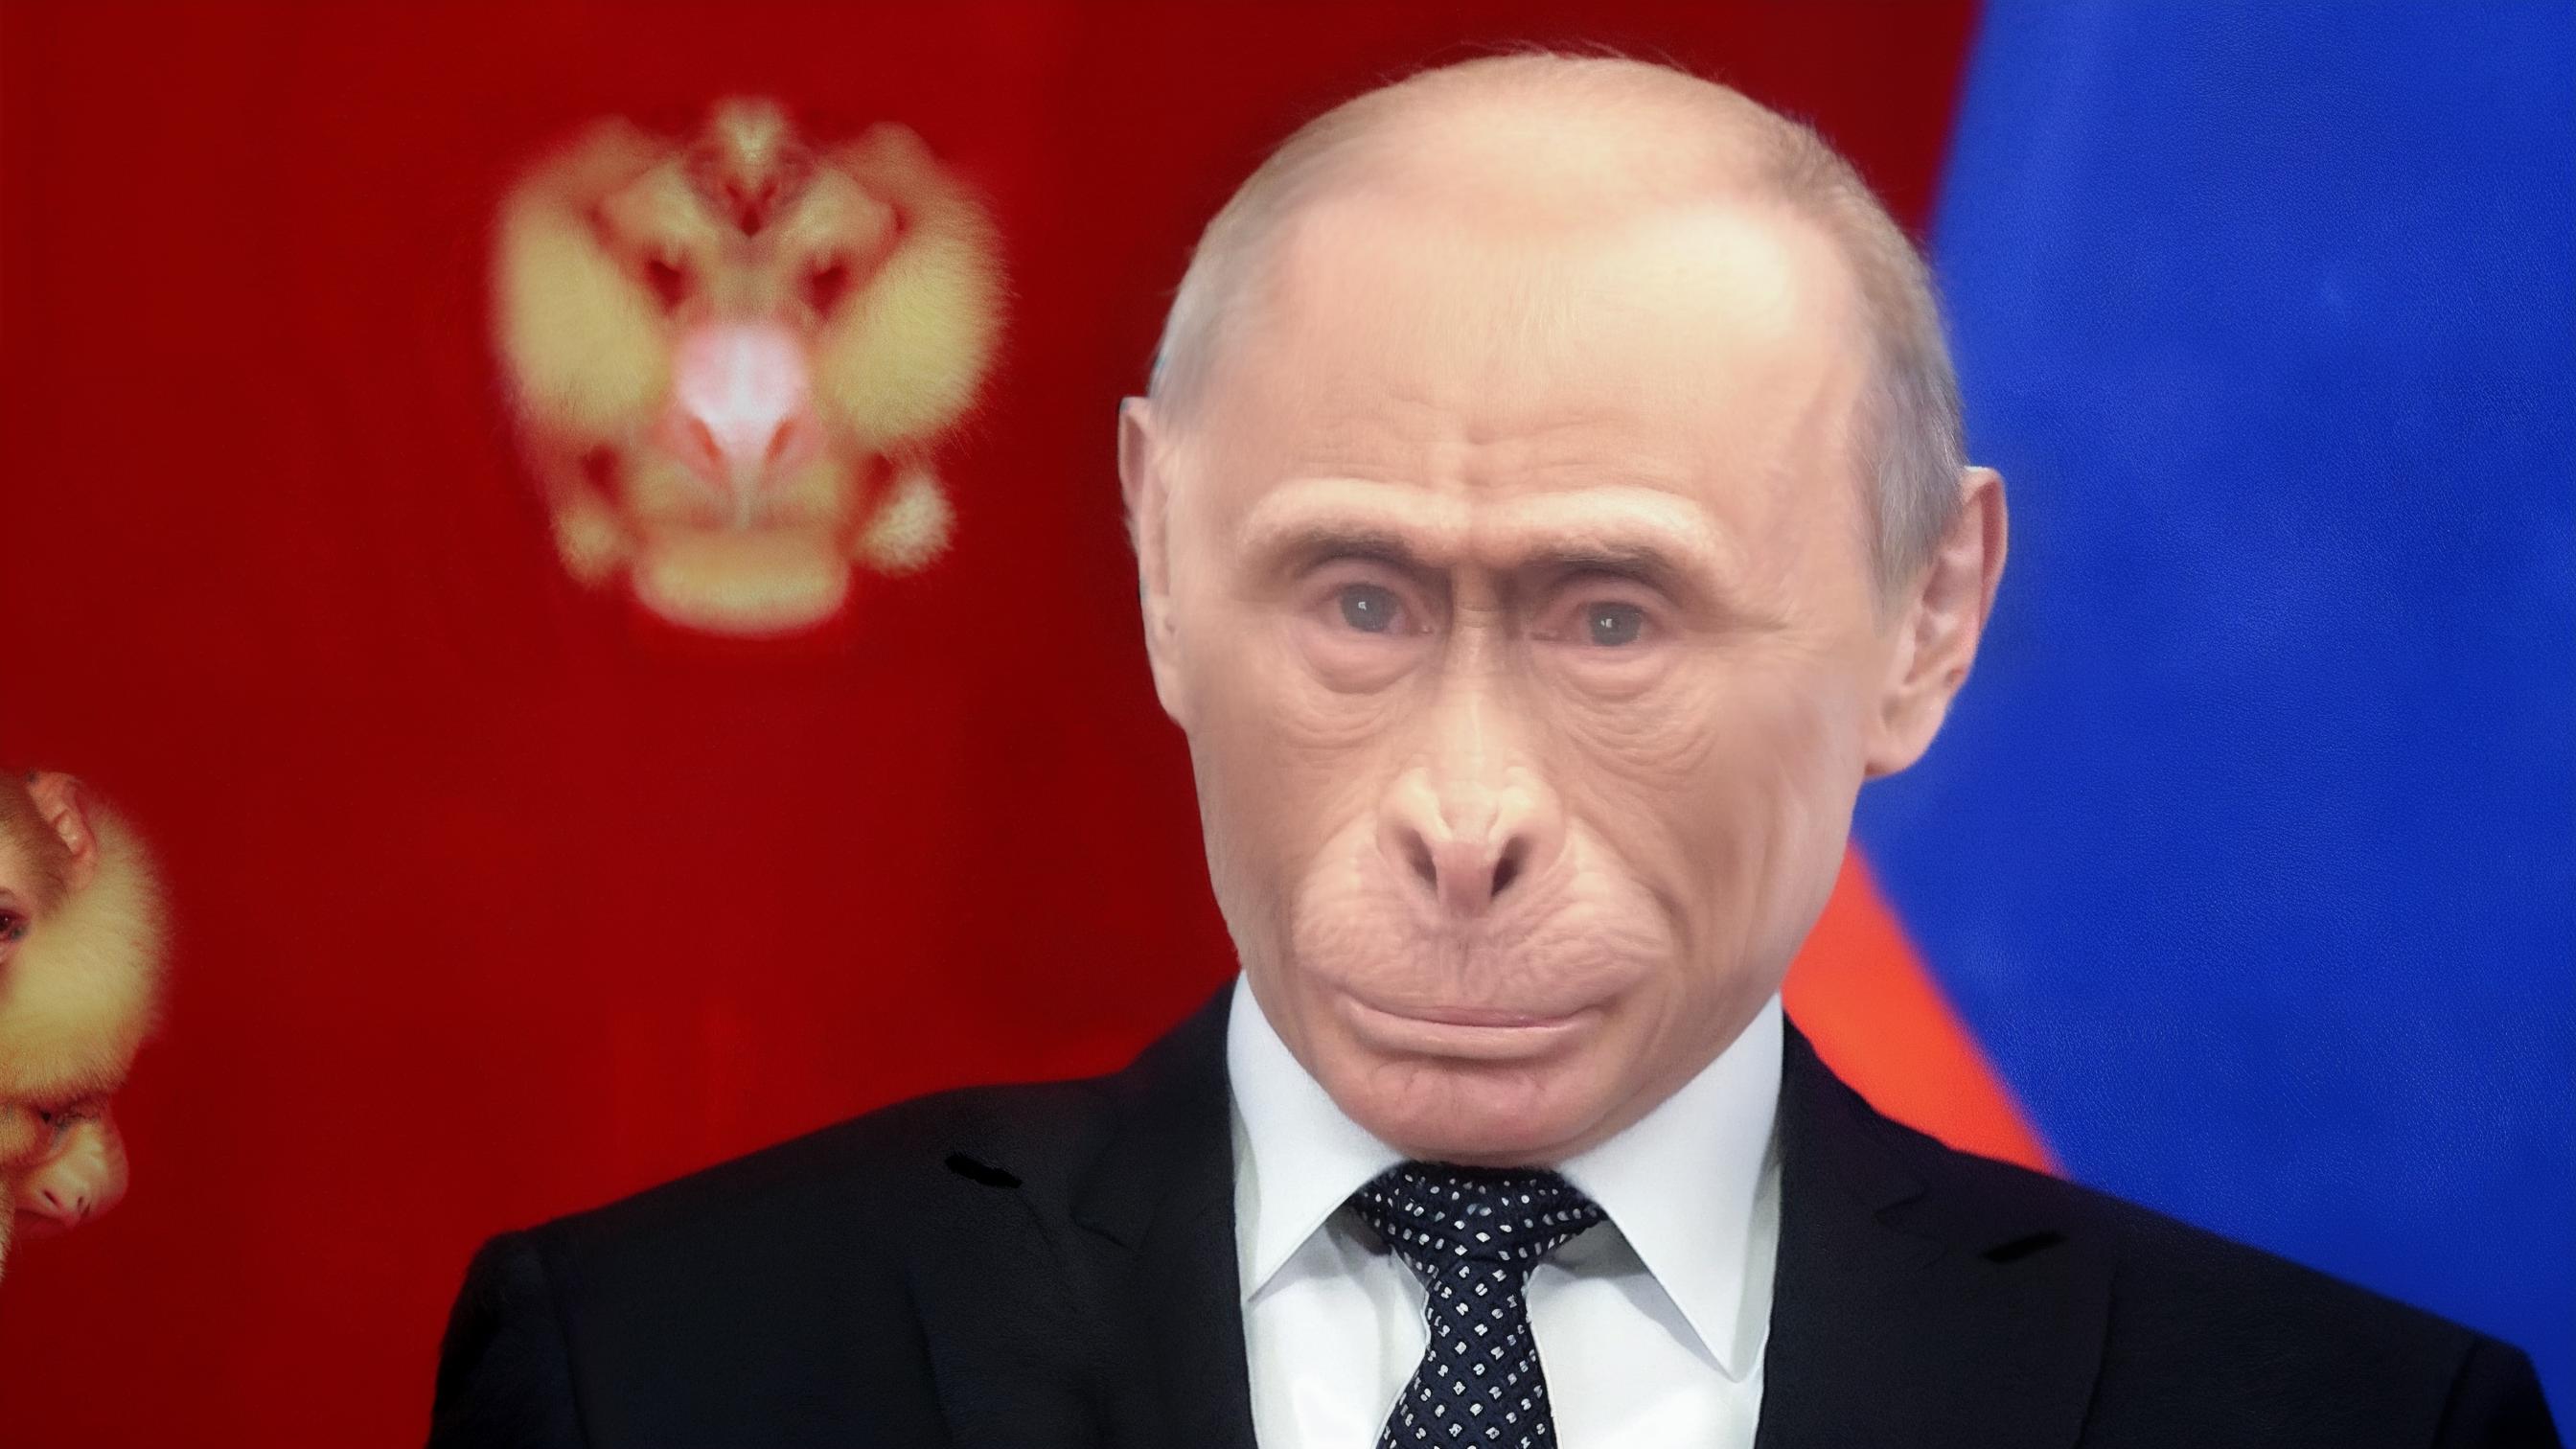 Vladimir Putin image by SigmaMale